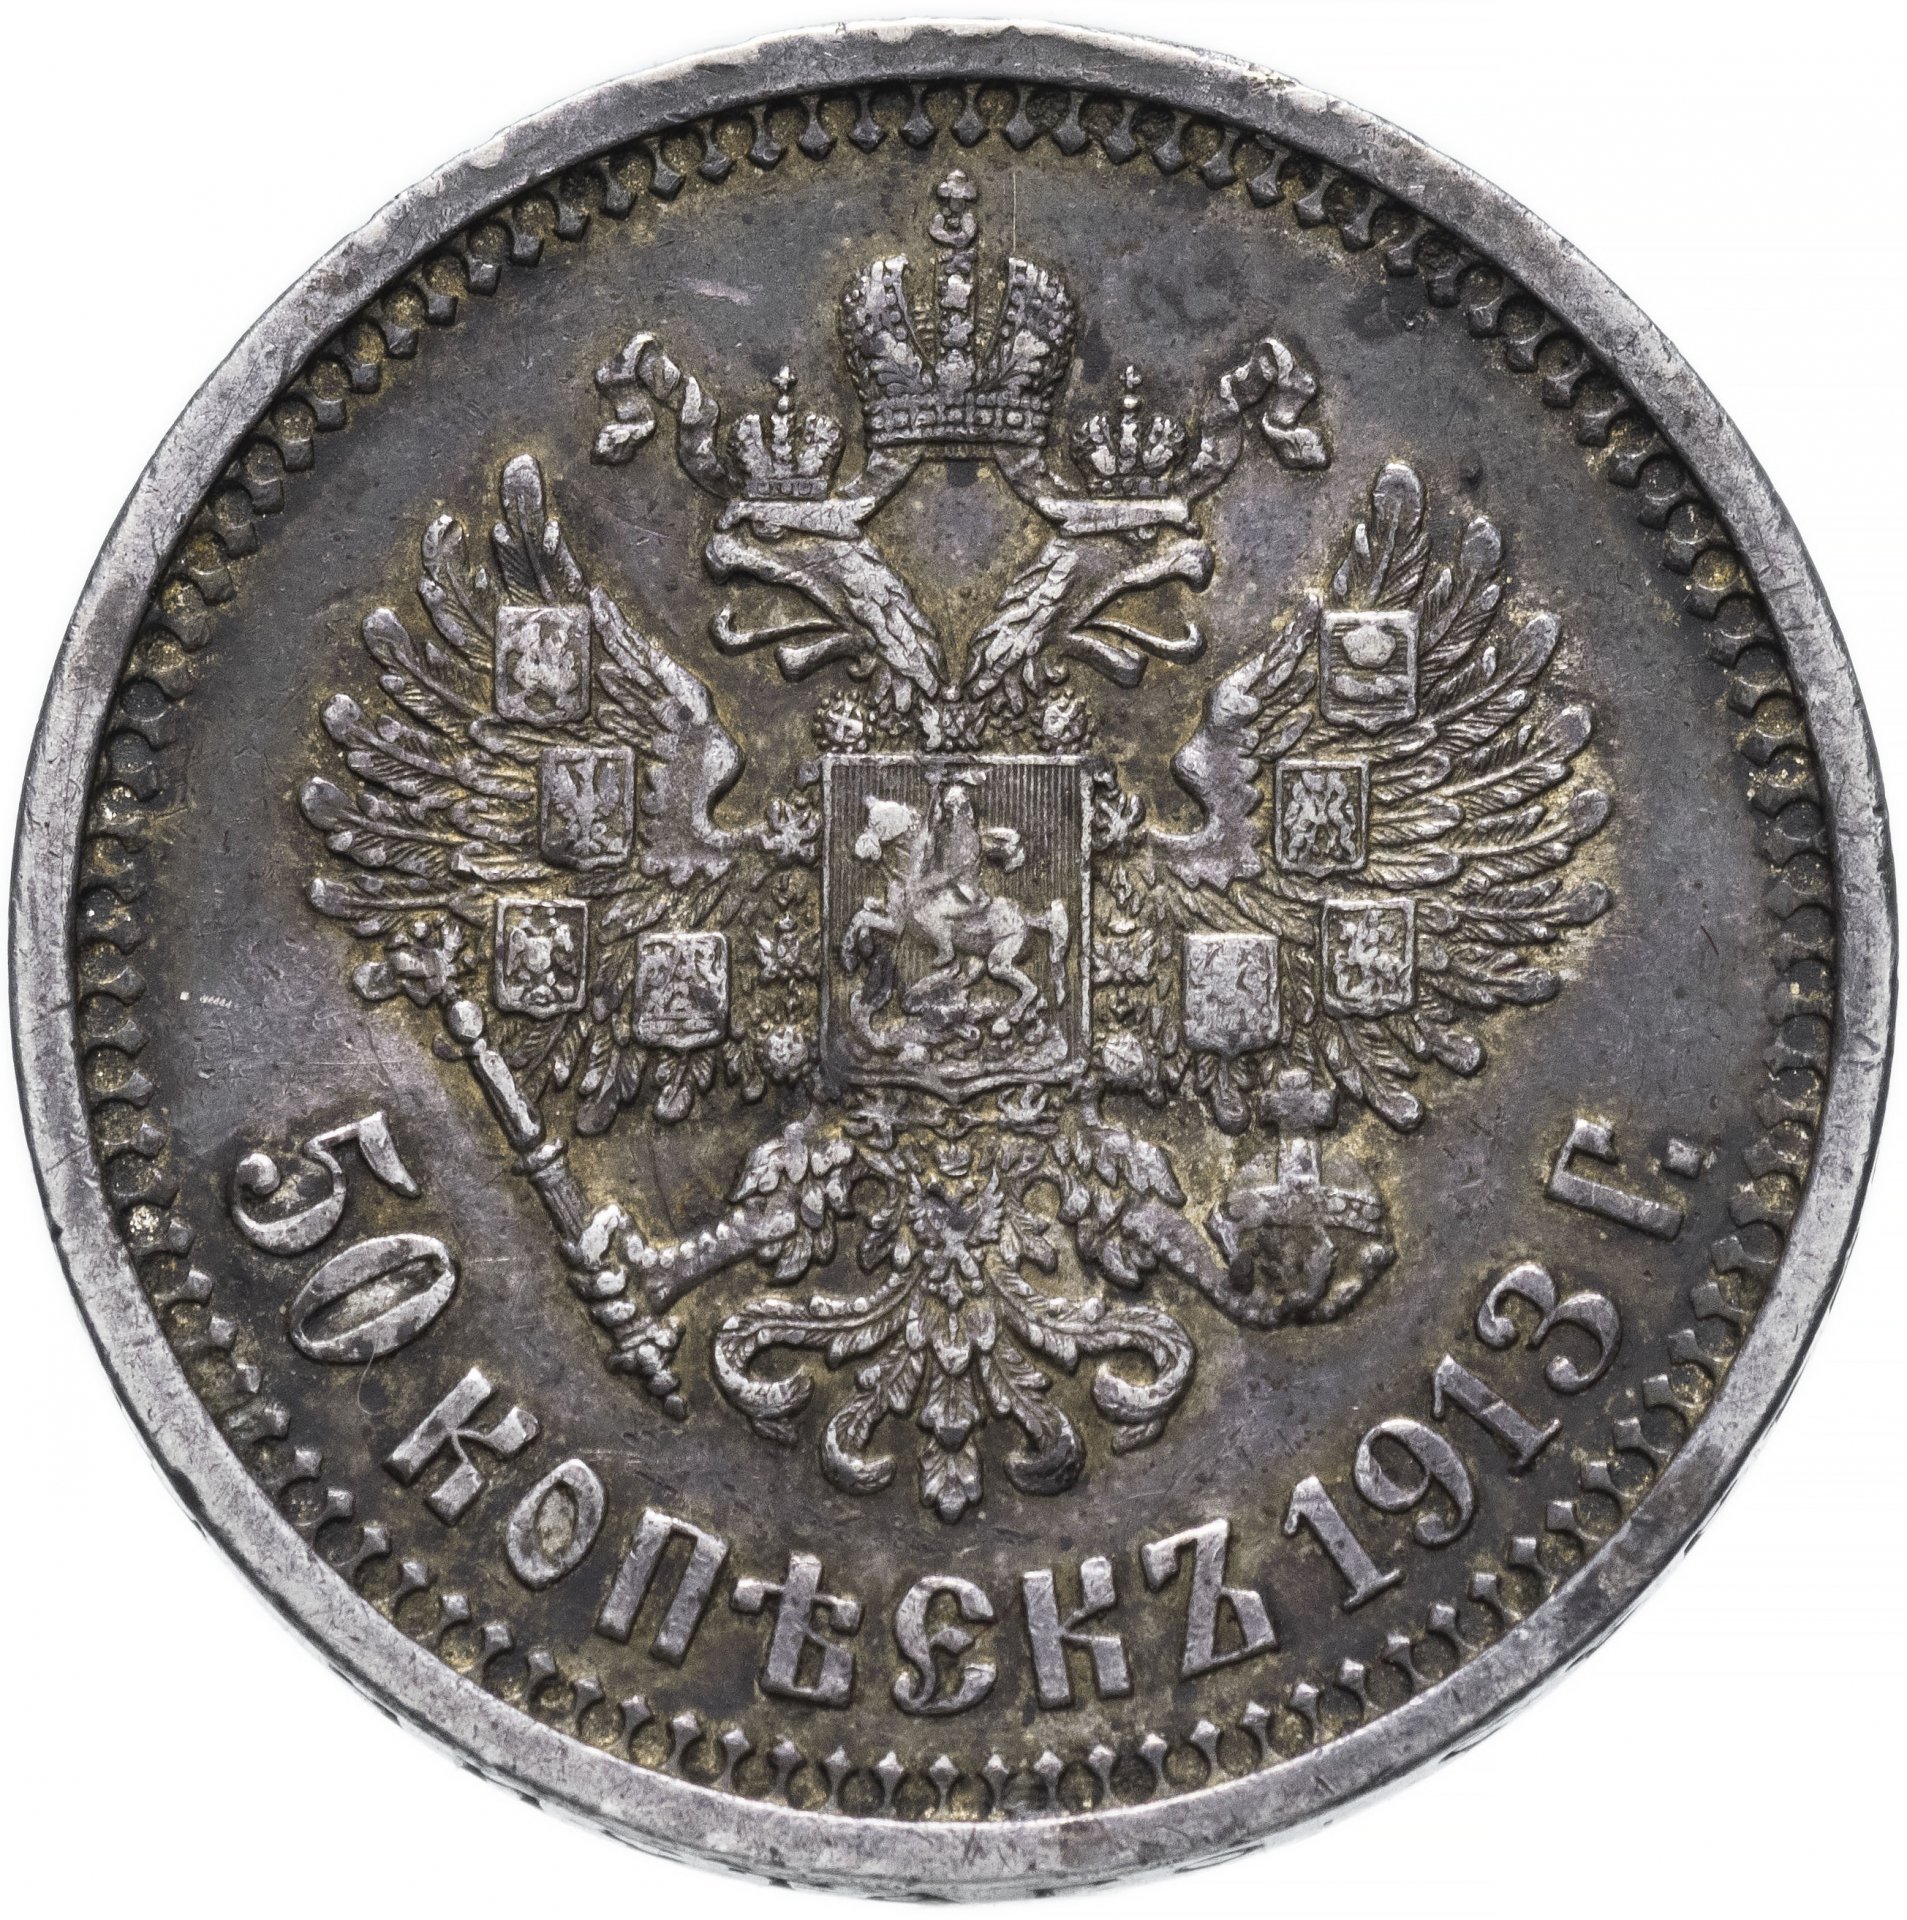 Монета 50 копеек года серебро. Полтина монета 1898 серебро. 1 Рубль Российской империи. Монета 1 рубль Российская Империя. Монета Николая 2 1 рубль серебро.